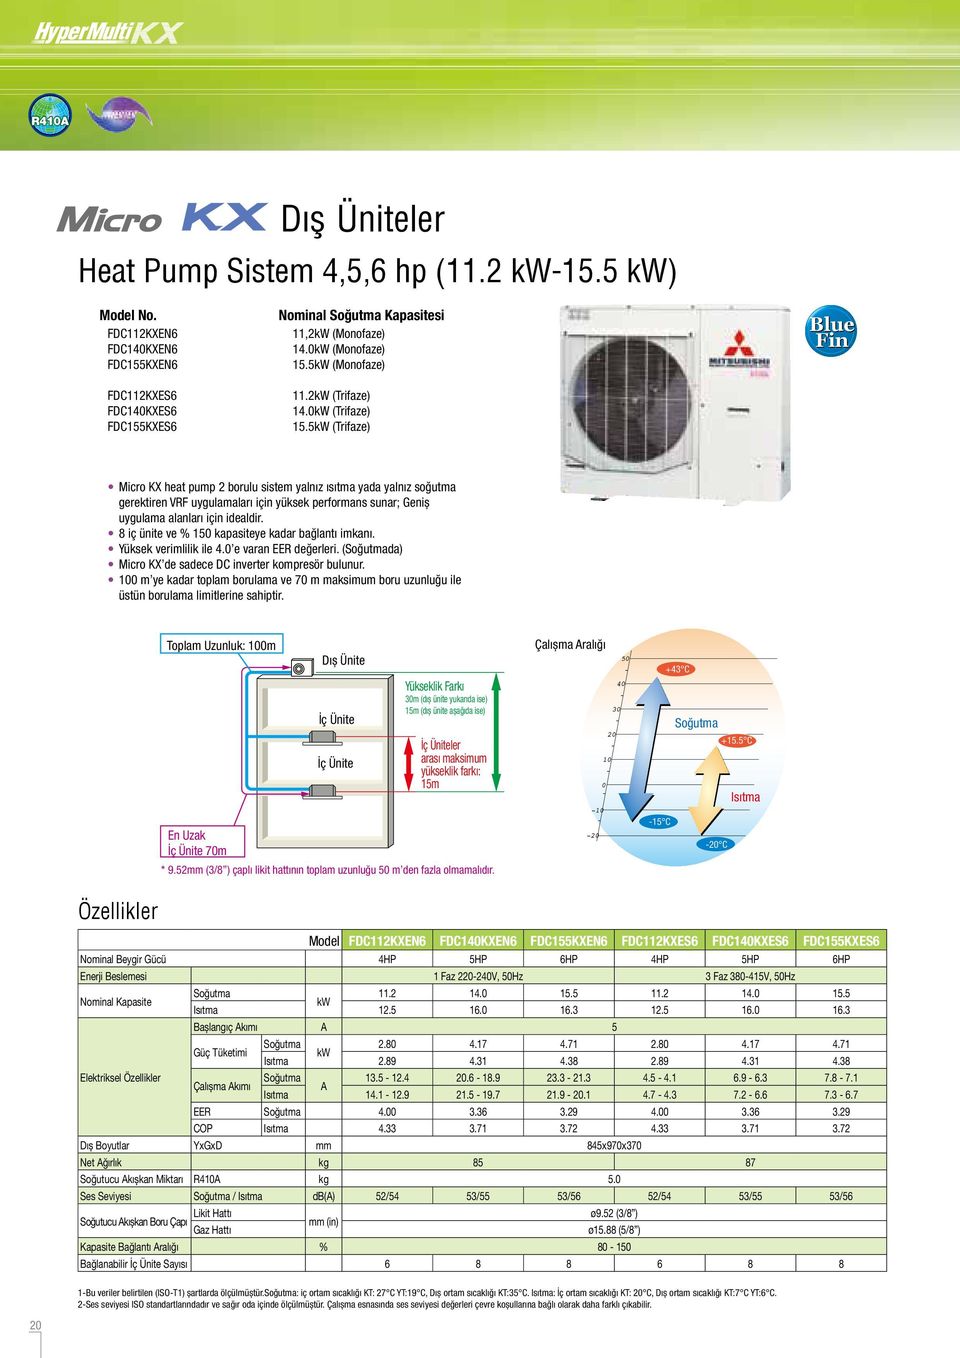 5kW (Trifaze) Blue Fin Micro KX heat pump 2 borulu sistem yalnız ısıtma yada yalnız soğutma gerektiren VRF uygulamaları için yüksek performans sunar; Geniş uygulama alanları için idealdir.